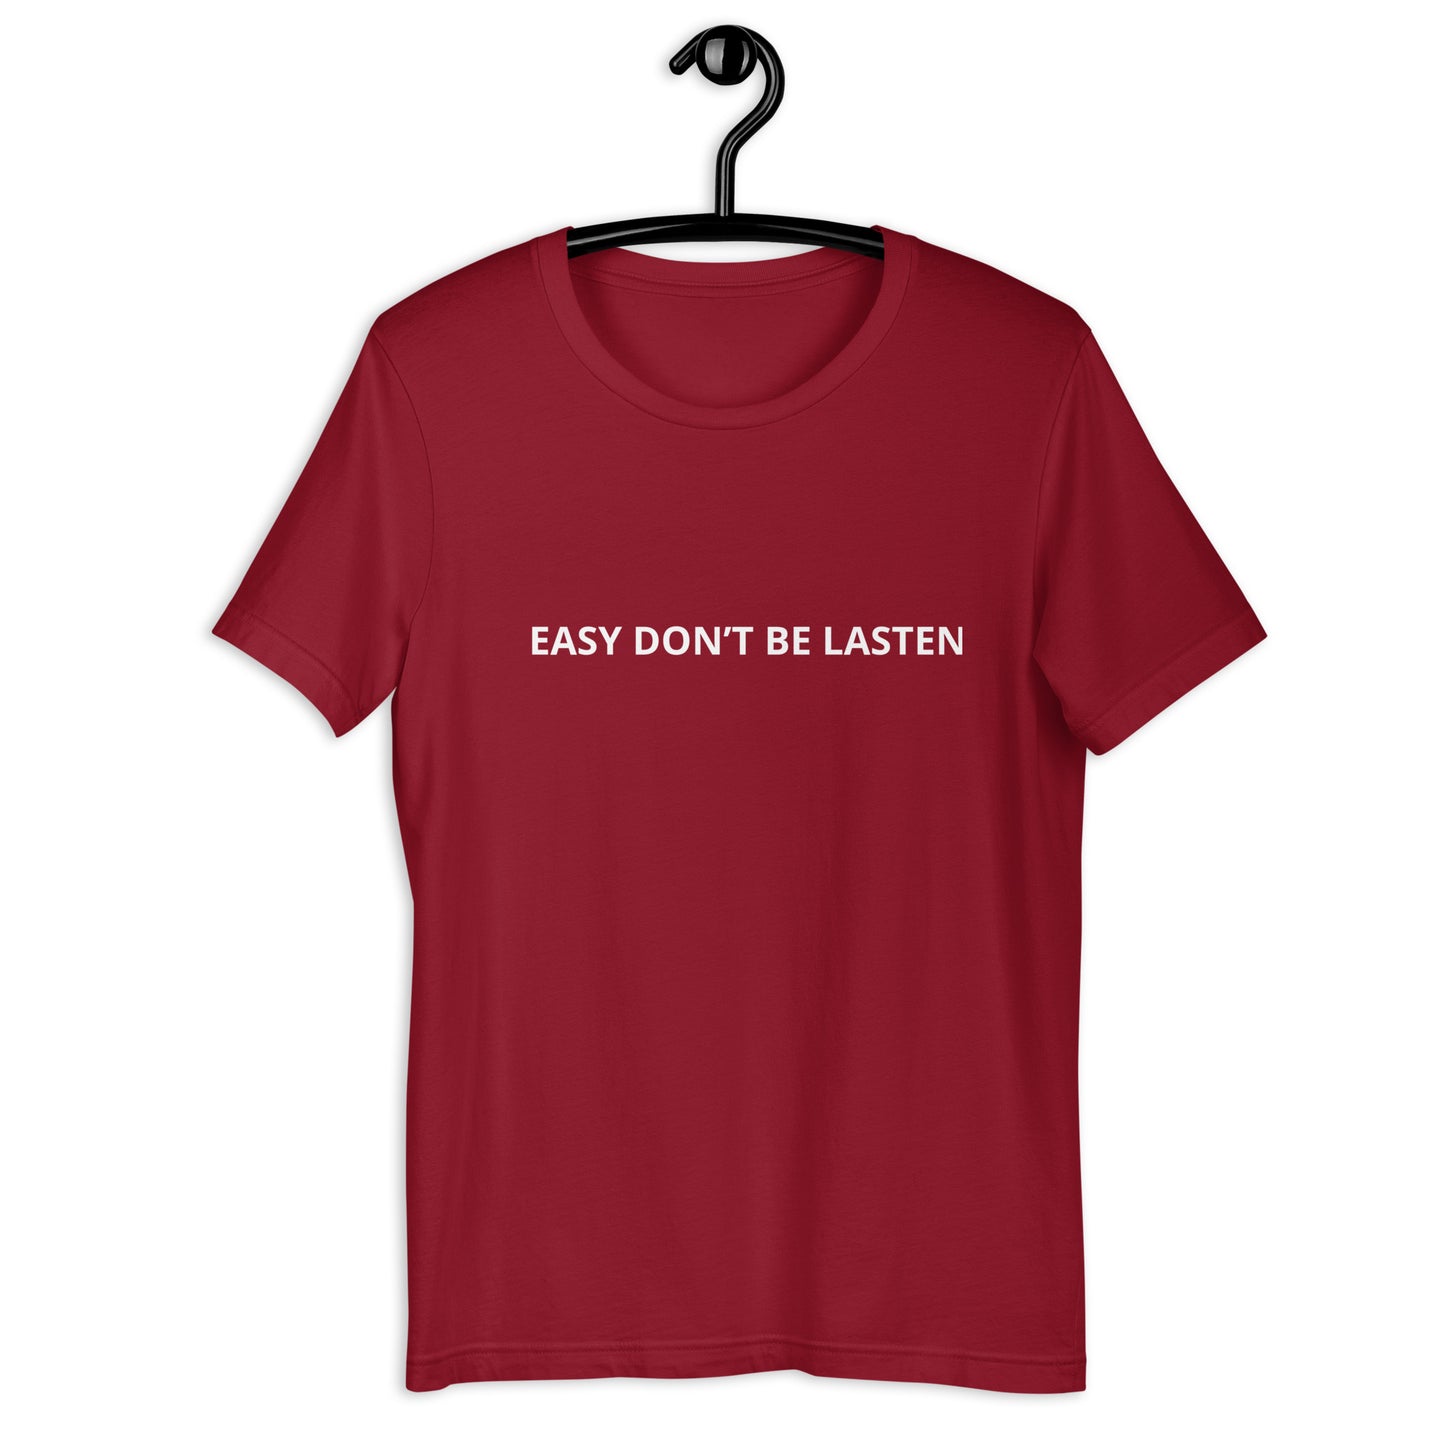 EASY DON’T BE LASTEN  Unisex t-shirt